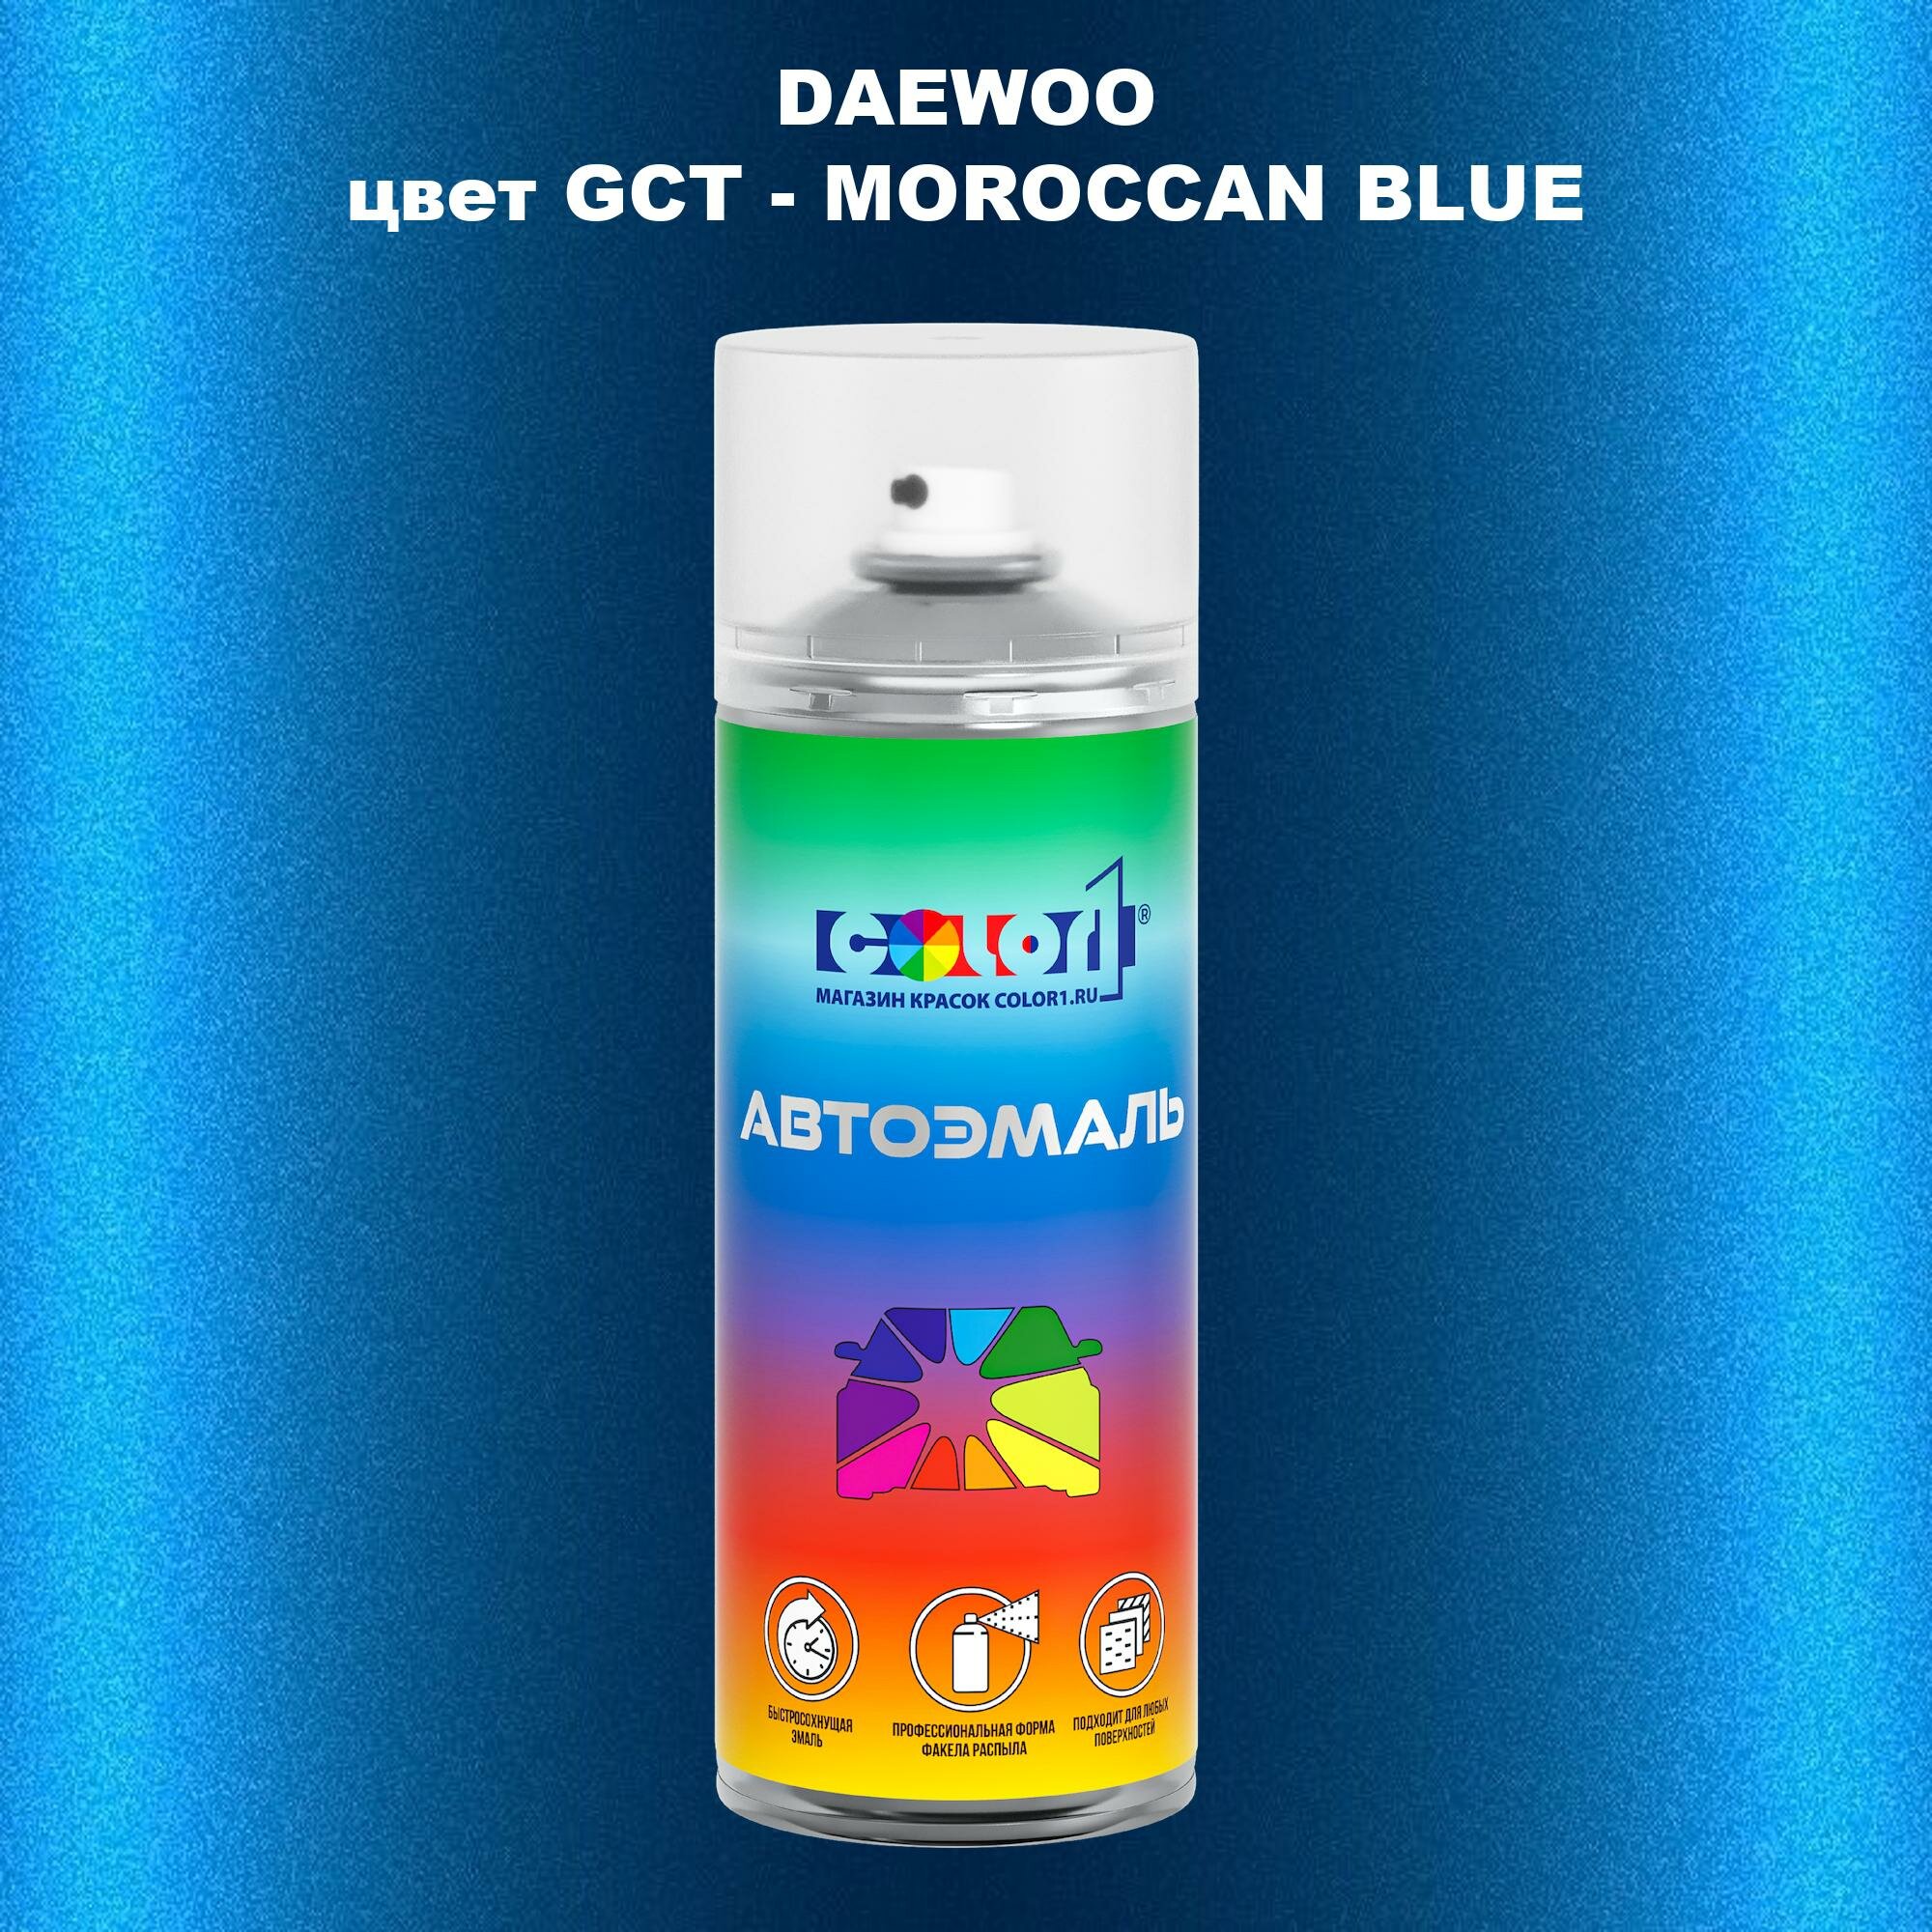 Аэрозольная краска COLOR1 для DAEWOO, цвет GCT - MOROCCAN BLUE